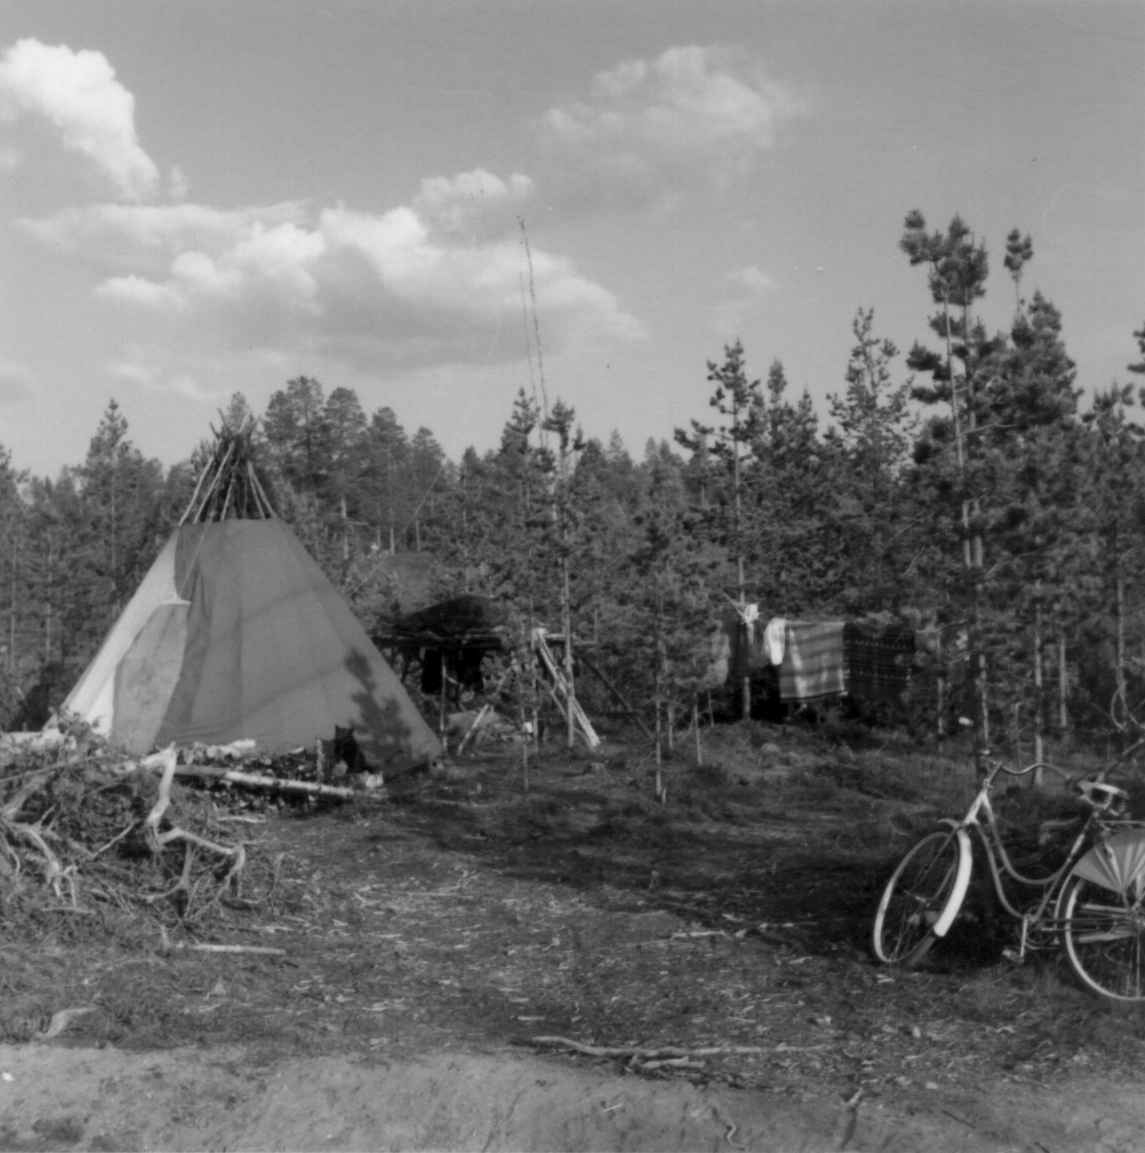 Antakelig Per labbas telt i Dividalen. Svensk flyttsameleir med telt, en sykkel står i forgrunnen. Lainiovuome-samer fra Karesuando. Øverbygd 1960.